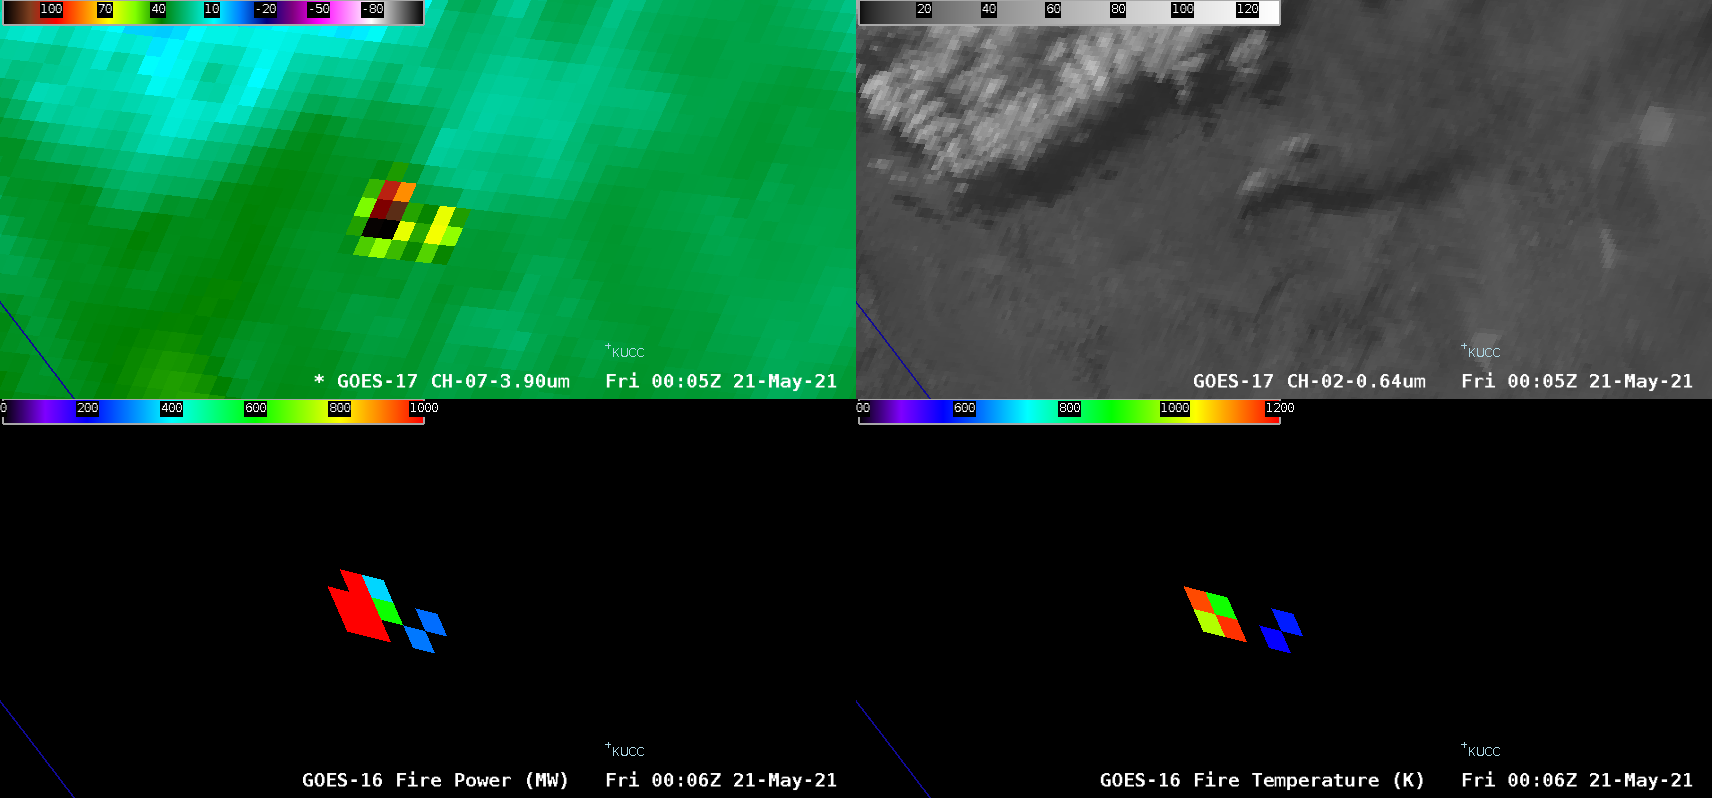 GOES-17 Shortwave Infrared (3.9 µm, top left), GOES-17 